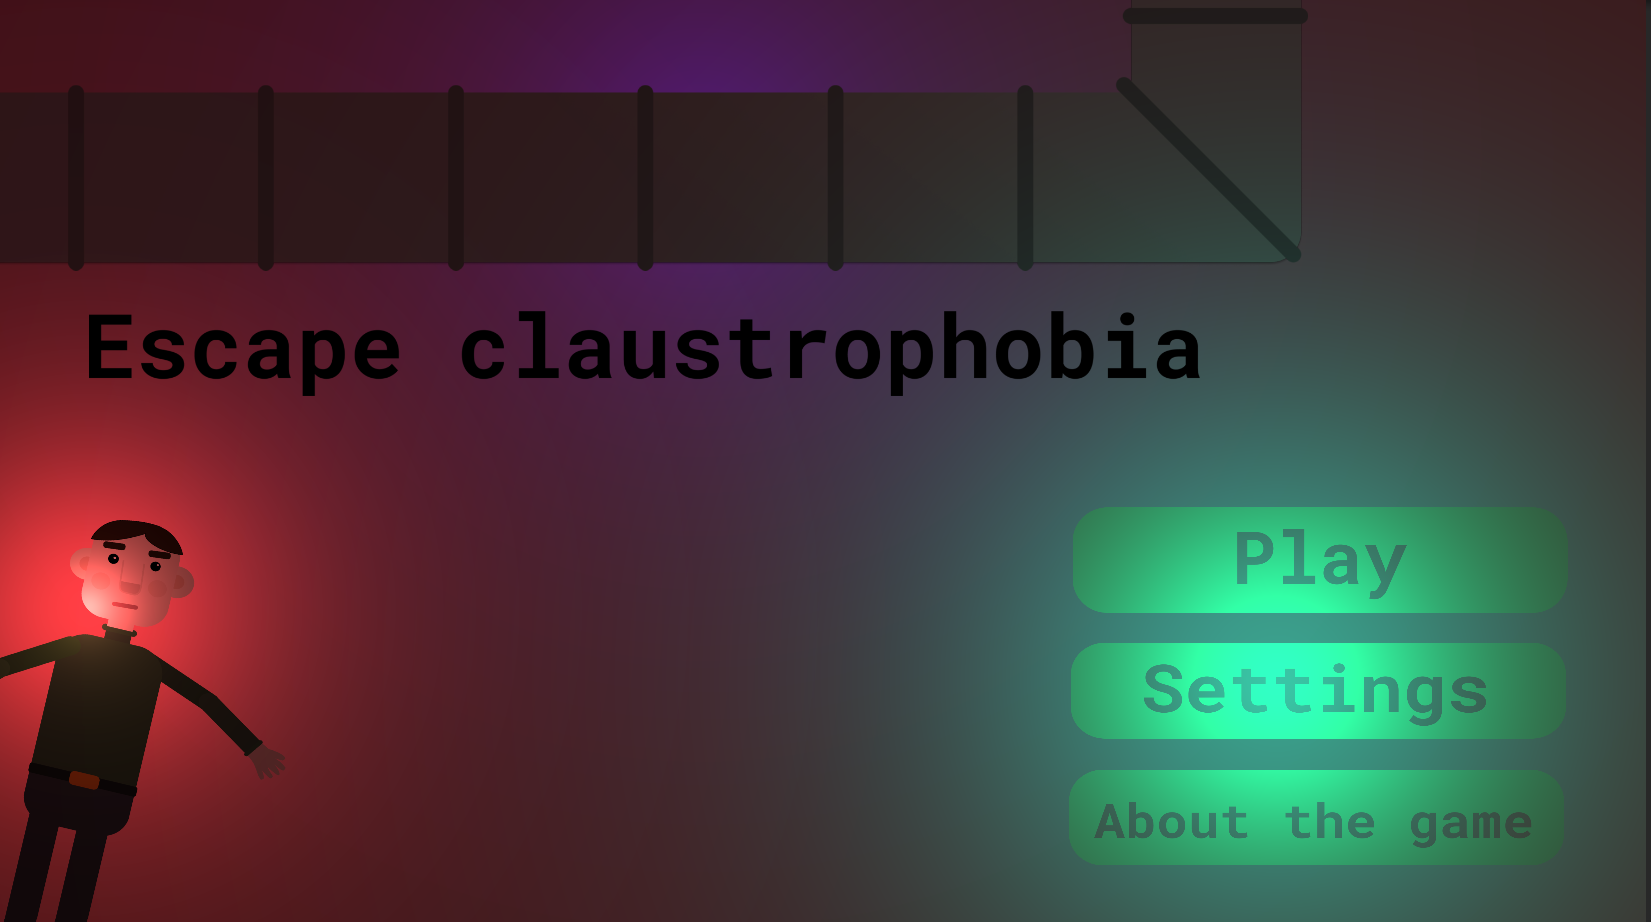 Escape claustrophobia